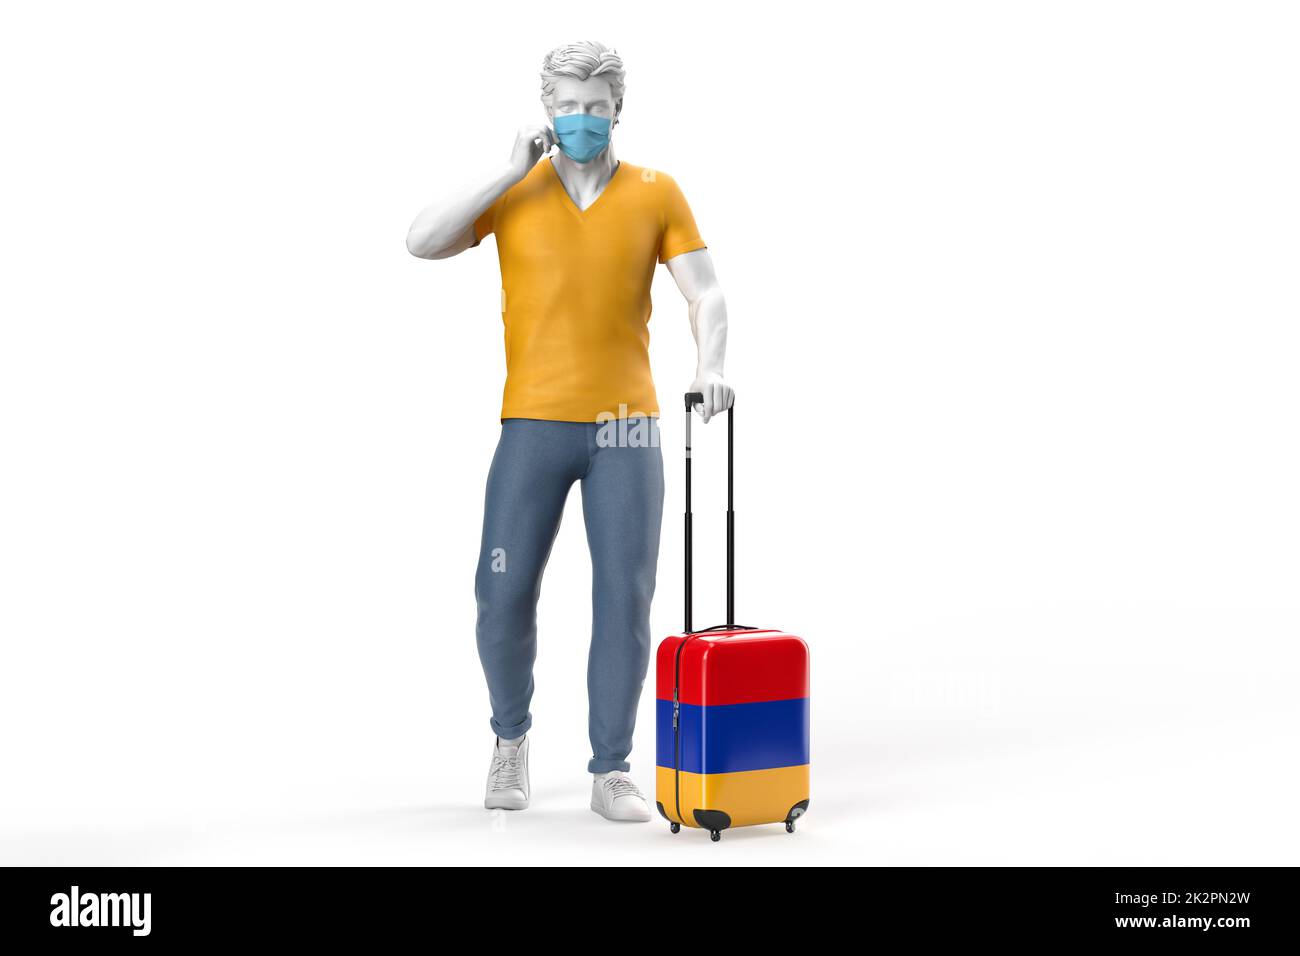 Uomo che indossa maschera viso tira una valigia testurizzata con bandiera di Armenia. Rendering 3D Foto Stock